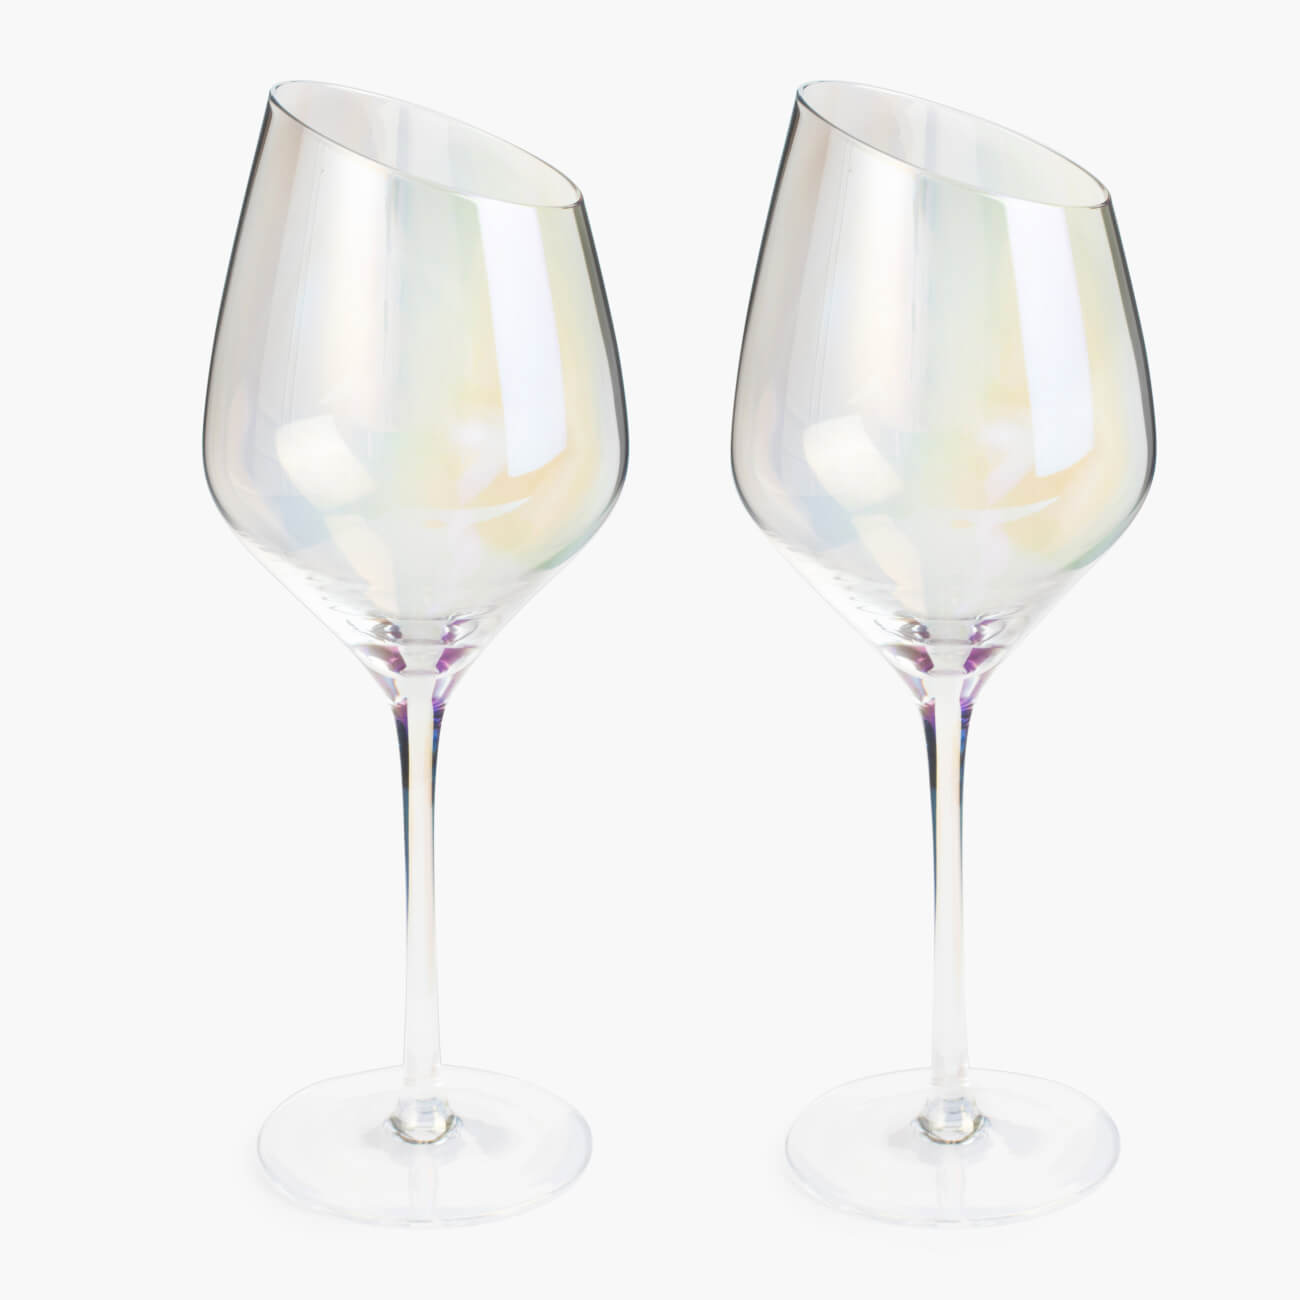 Бокал для белого вина, 460 мл, 4 шт, стекло, перламутр, Charm L polar бокал для коньяка 300 мл 4 шт стекло перламутр charm l polar